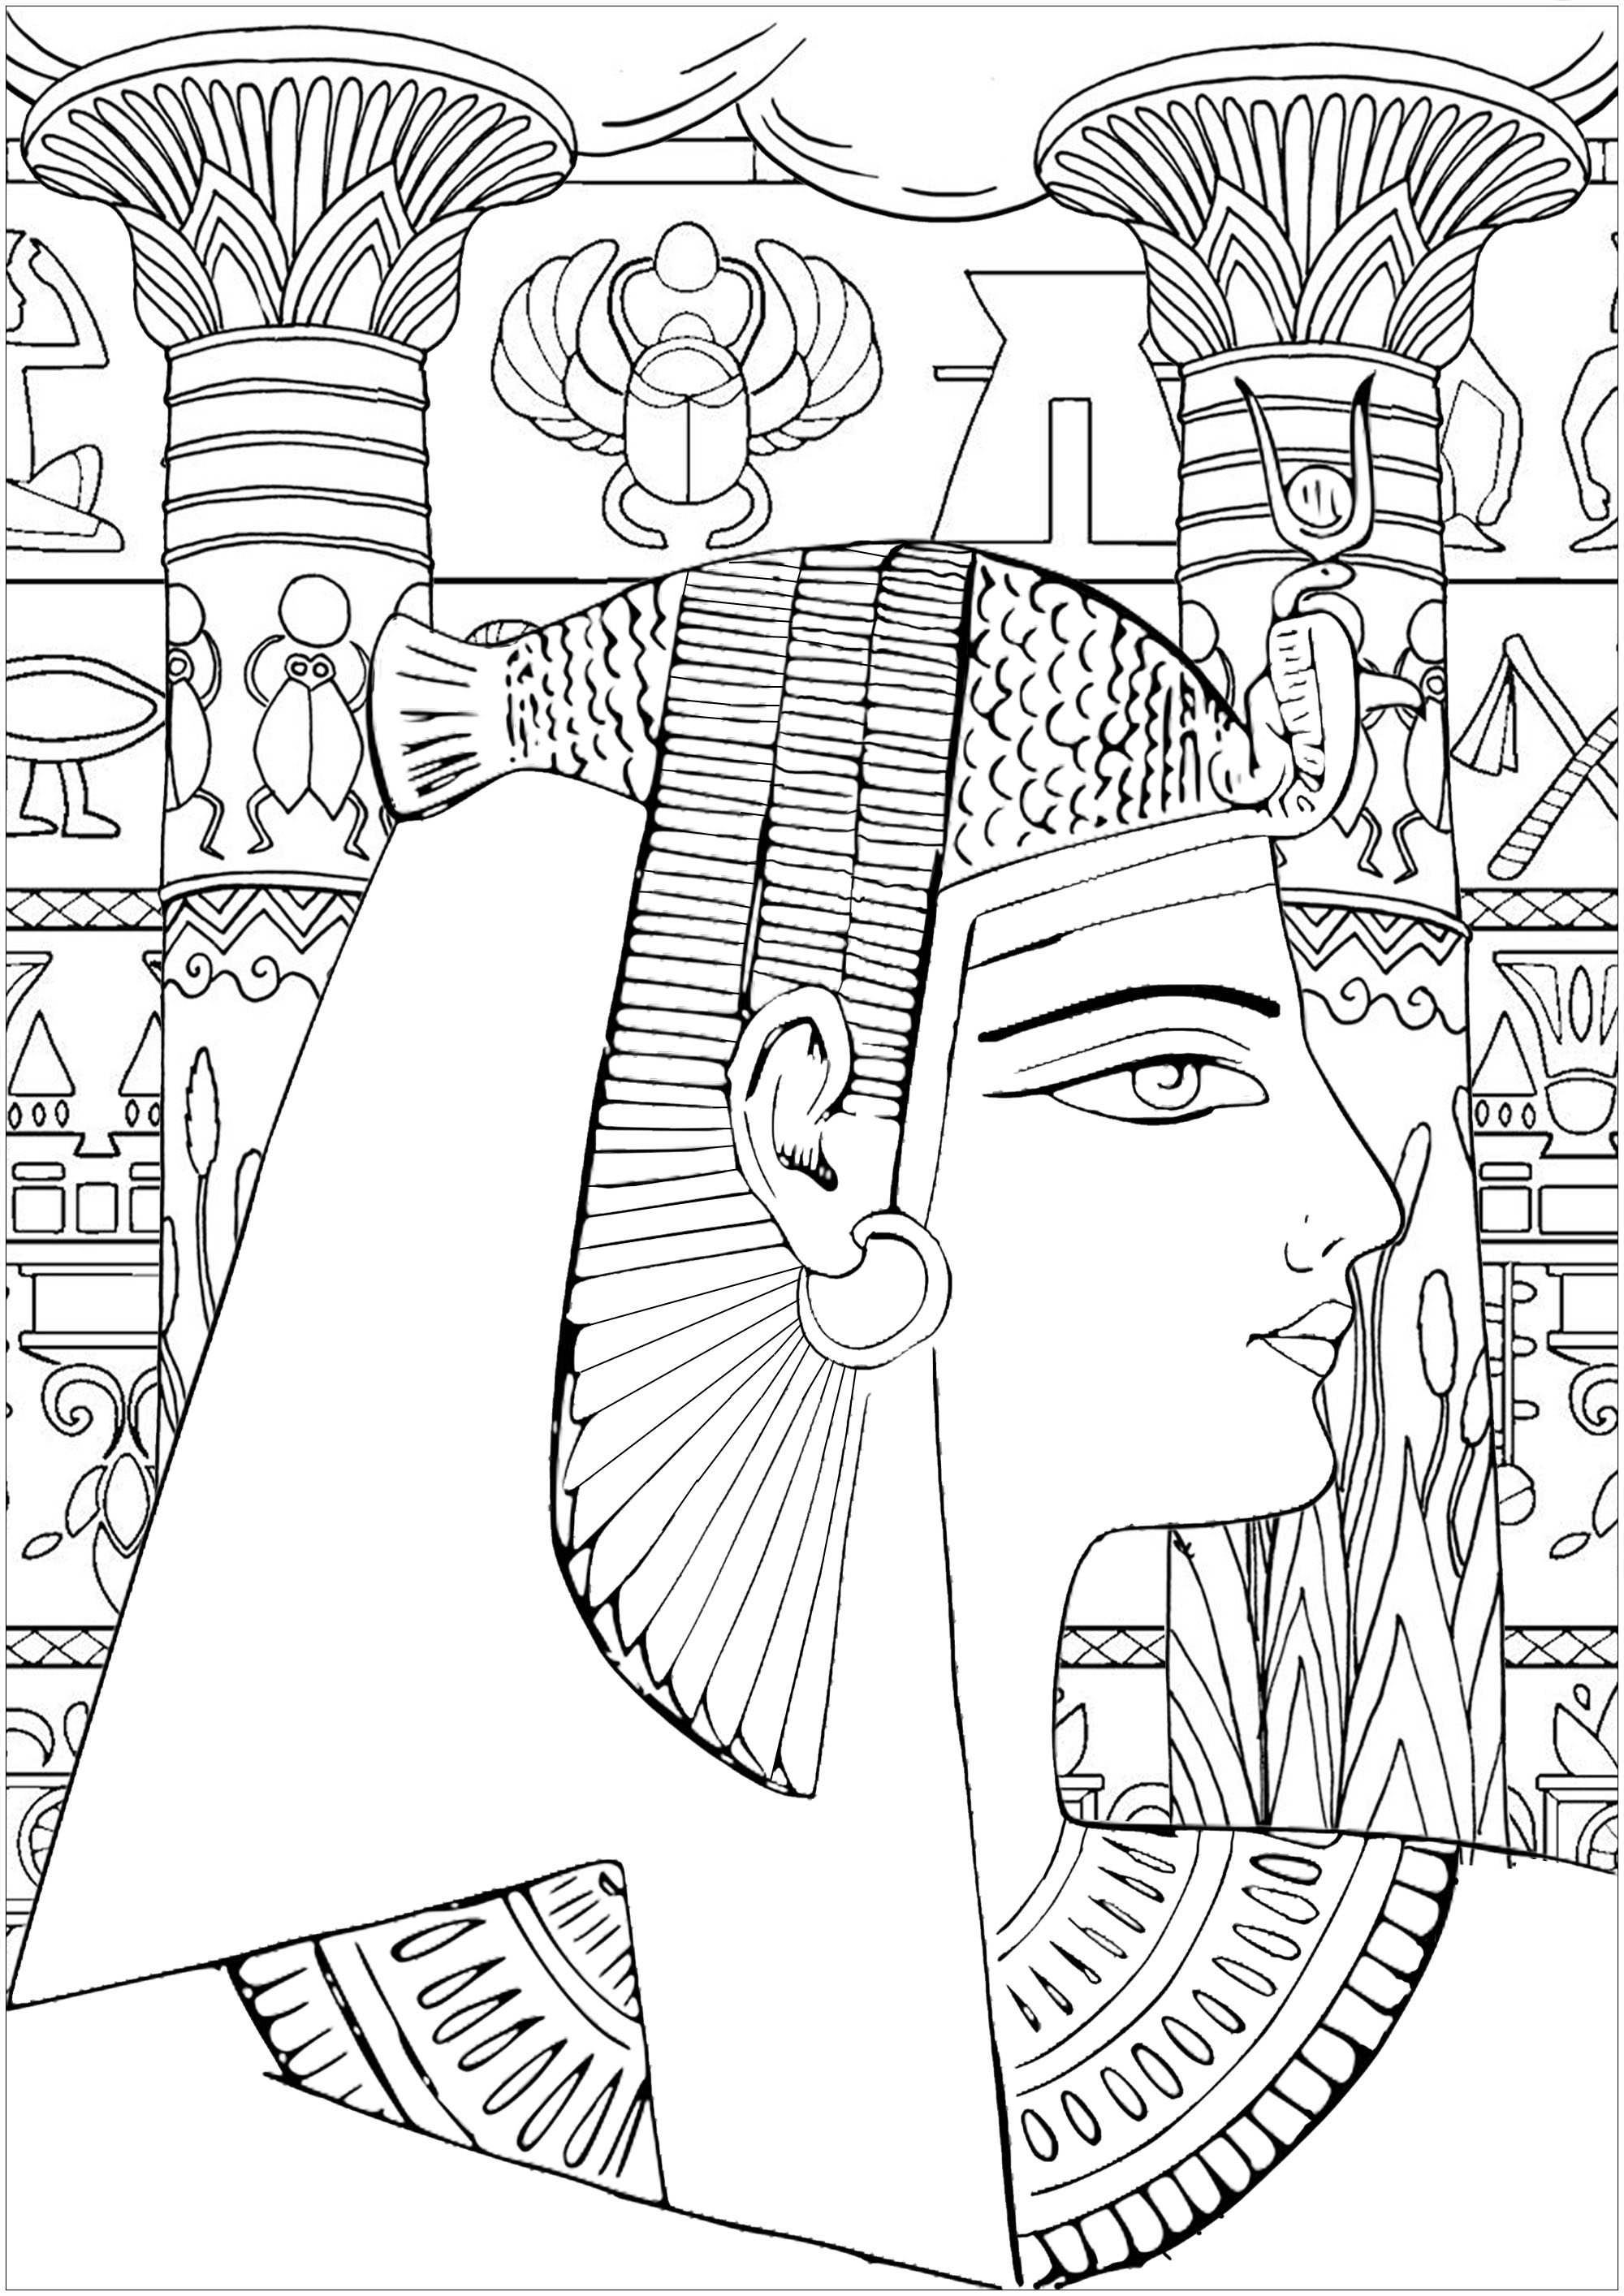 Una reina de Egipto, con jeroglíficos y pilares decorados para colorear.